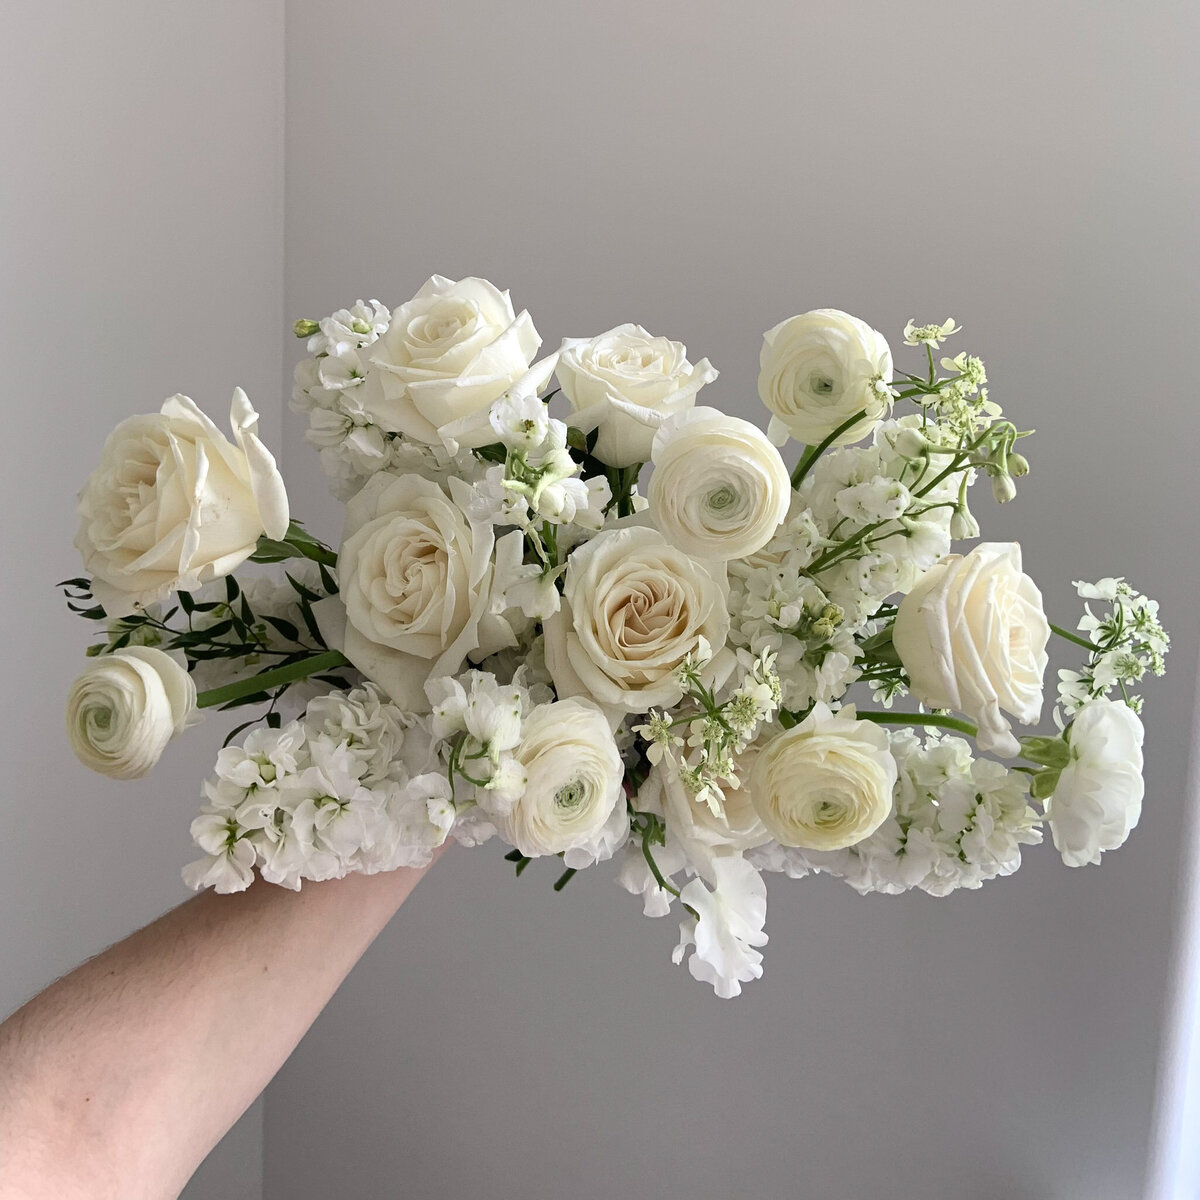 White, feminine, garden style wedding flower bouquet.